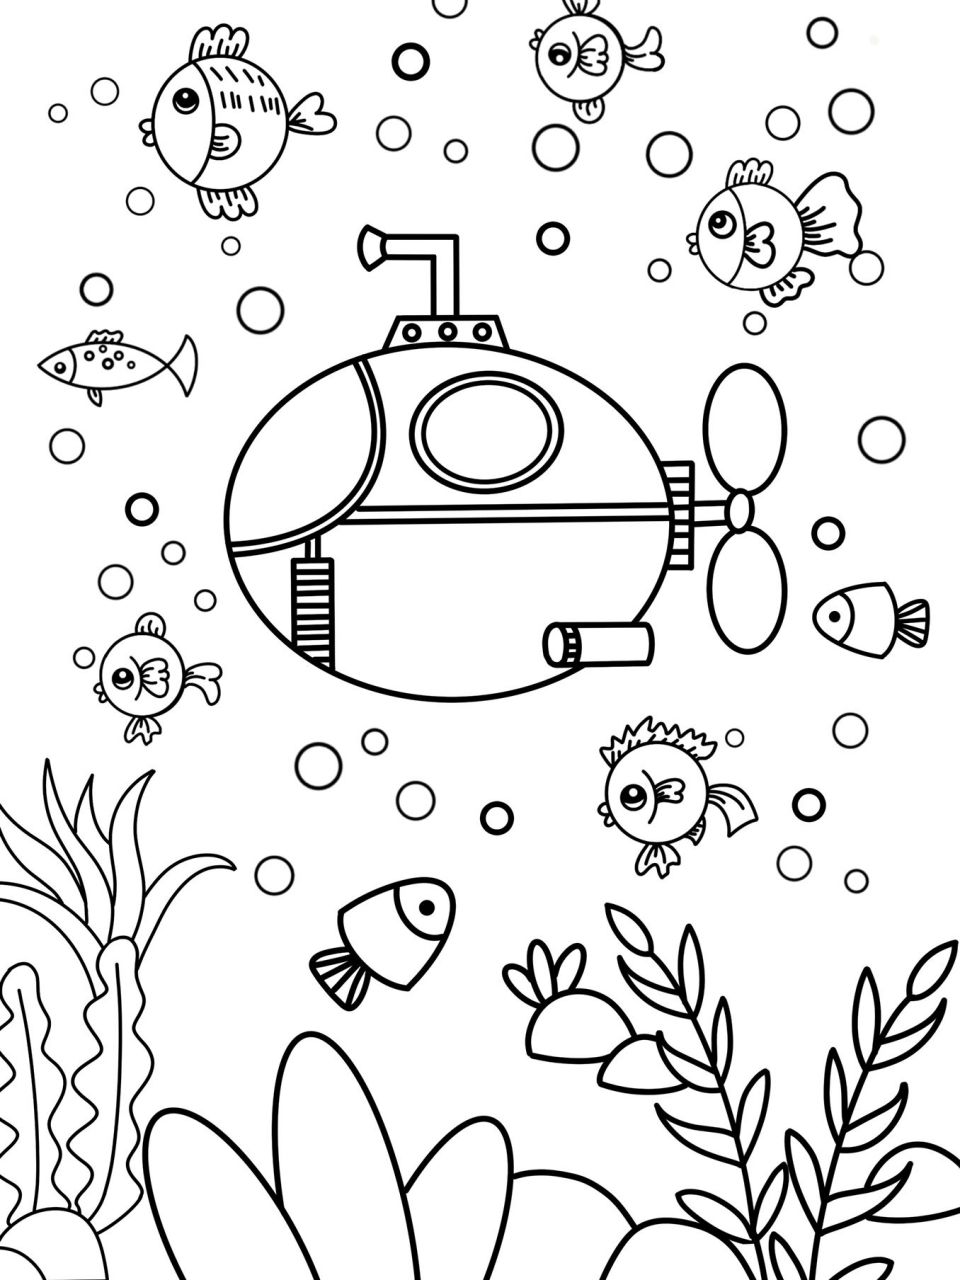 潜水艇的画法简笔画图片